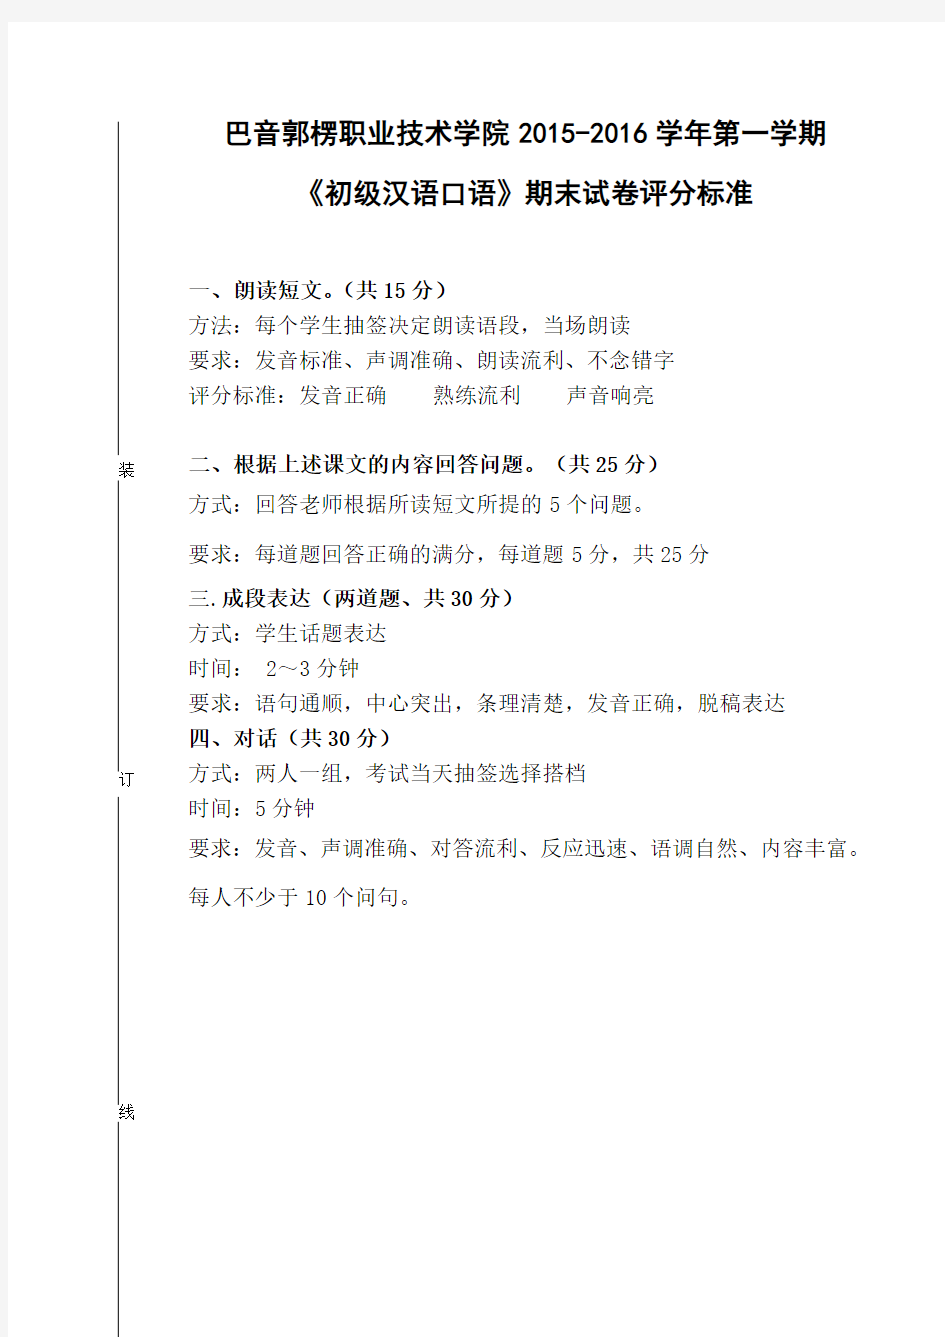 初级汉语口语试卷口试部分评分标准